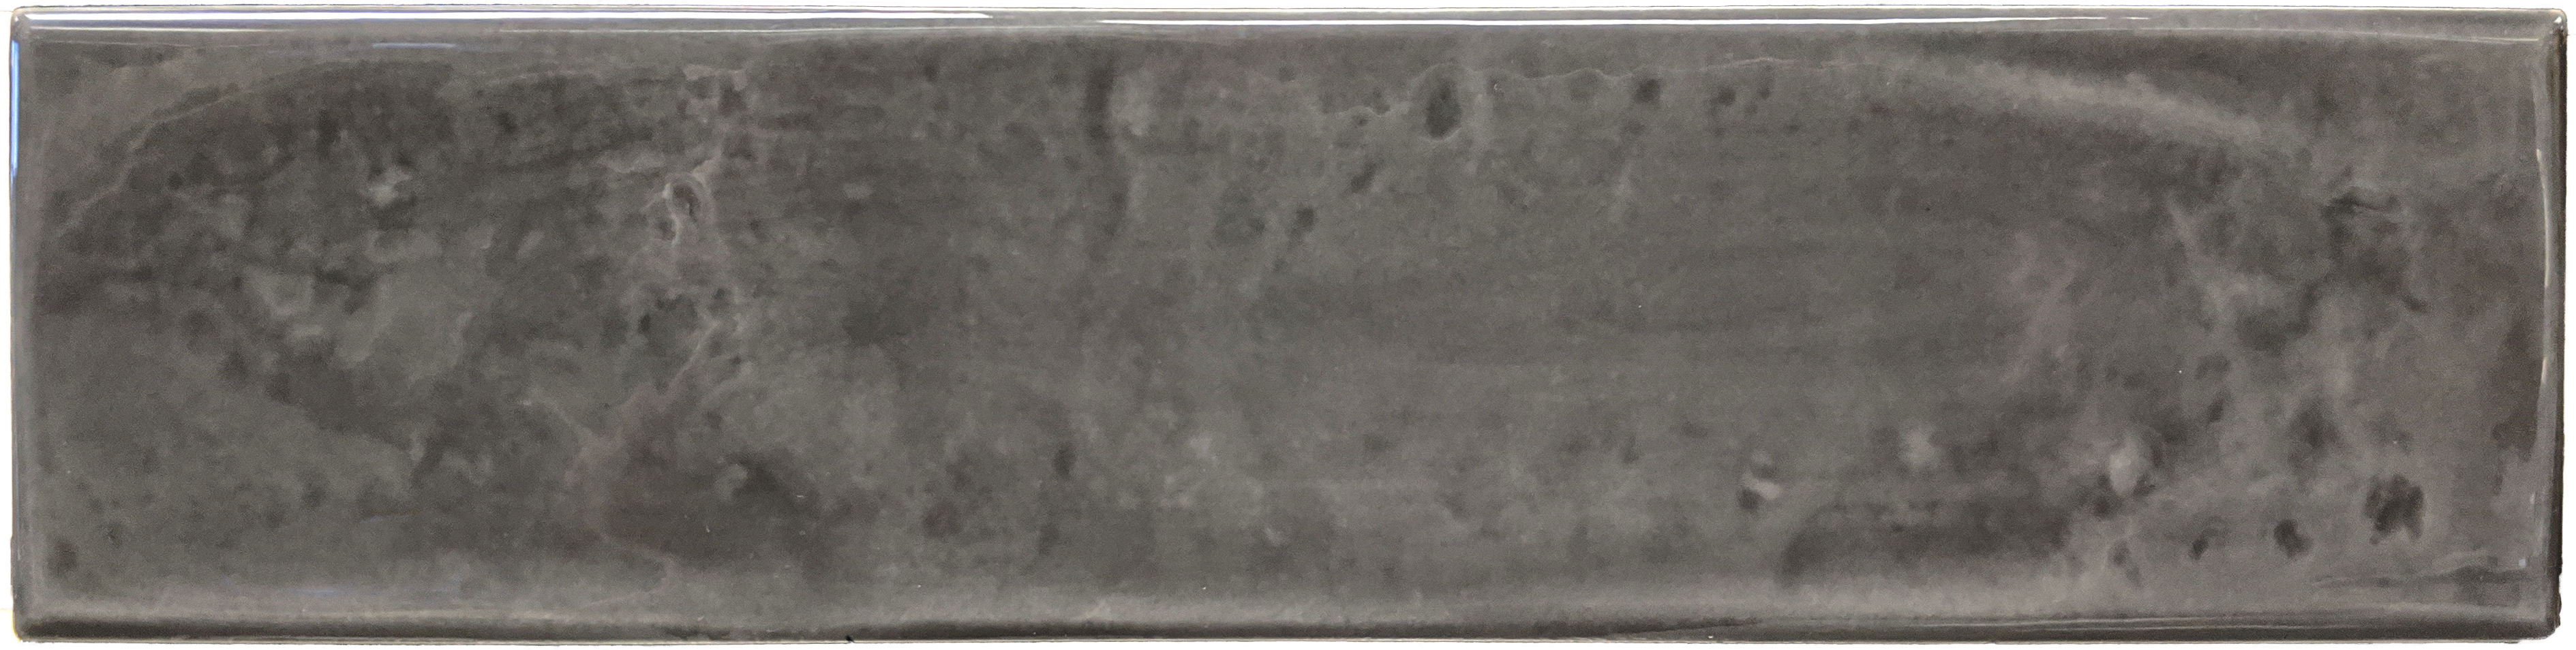 Charcoal - a medium soot grey